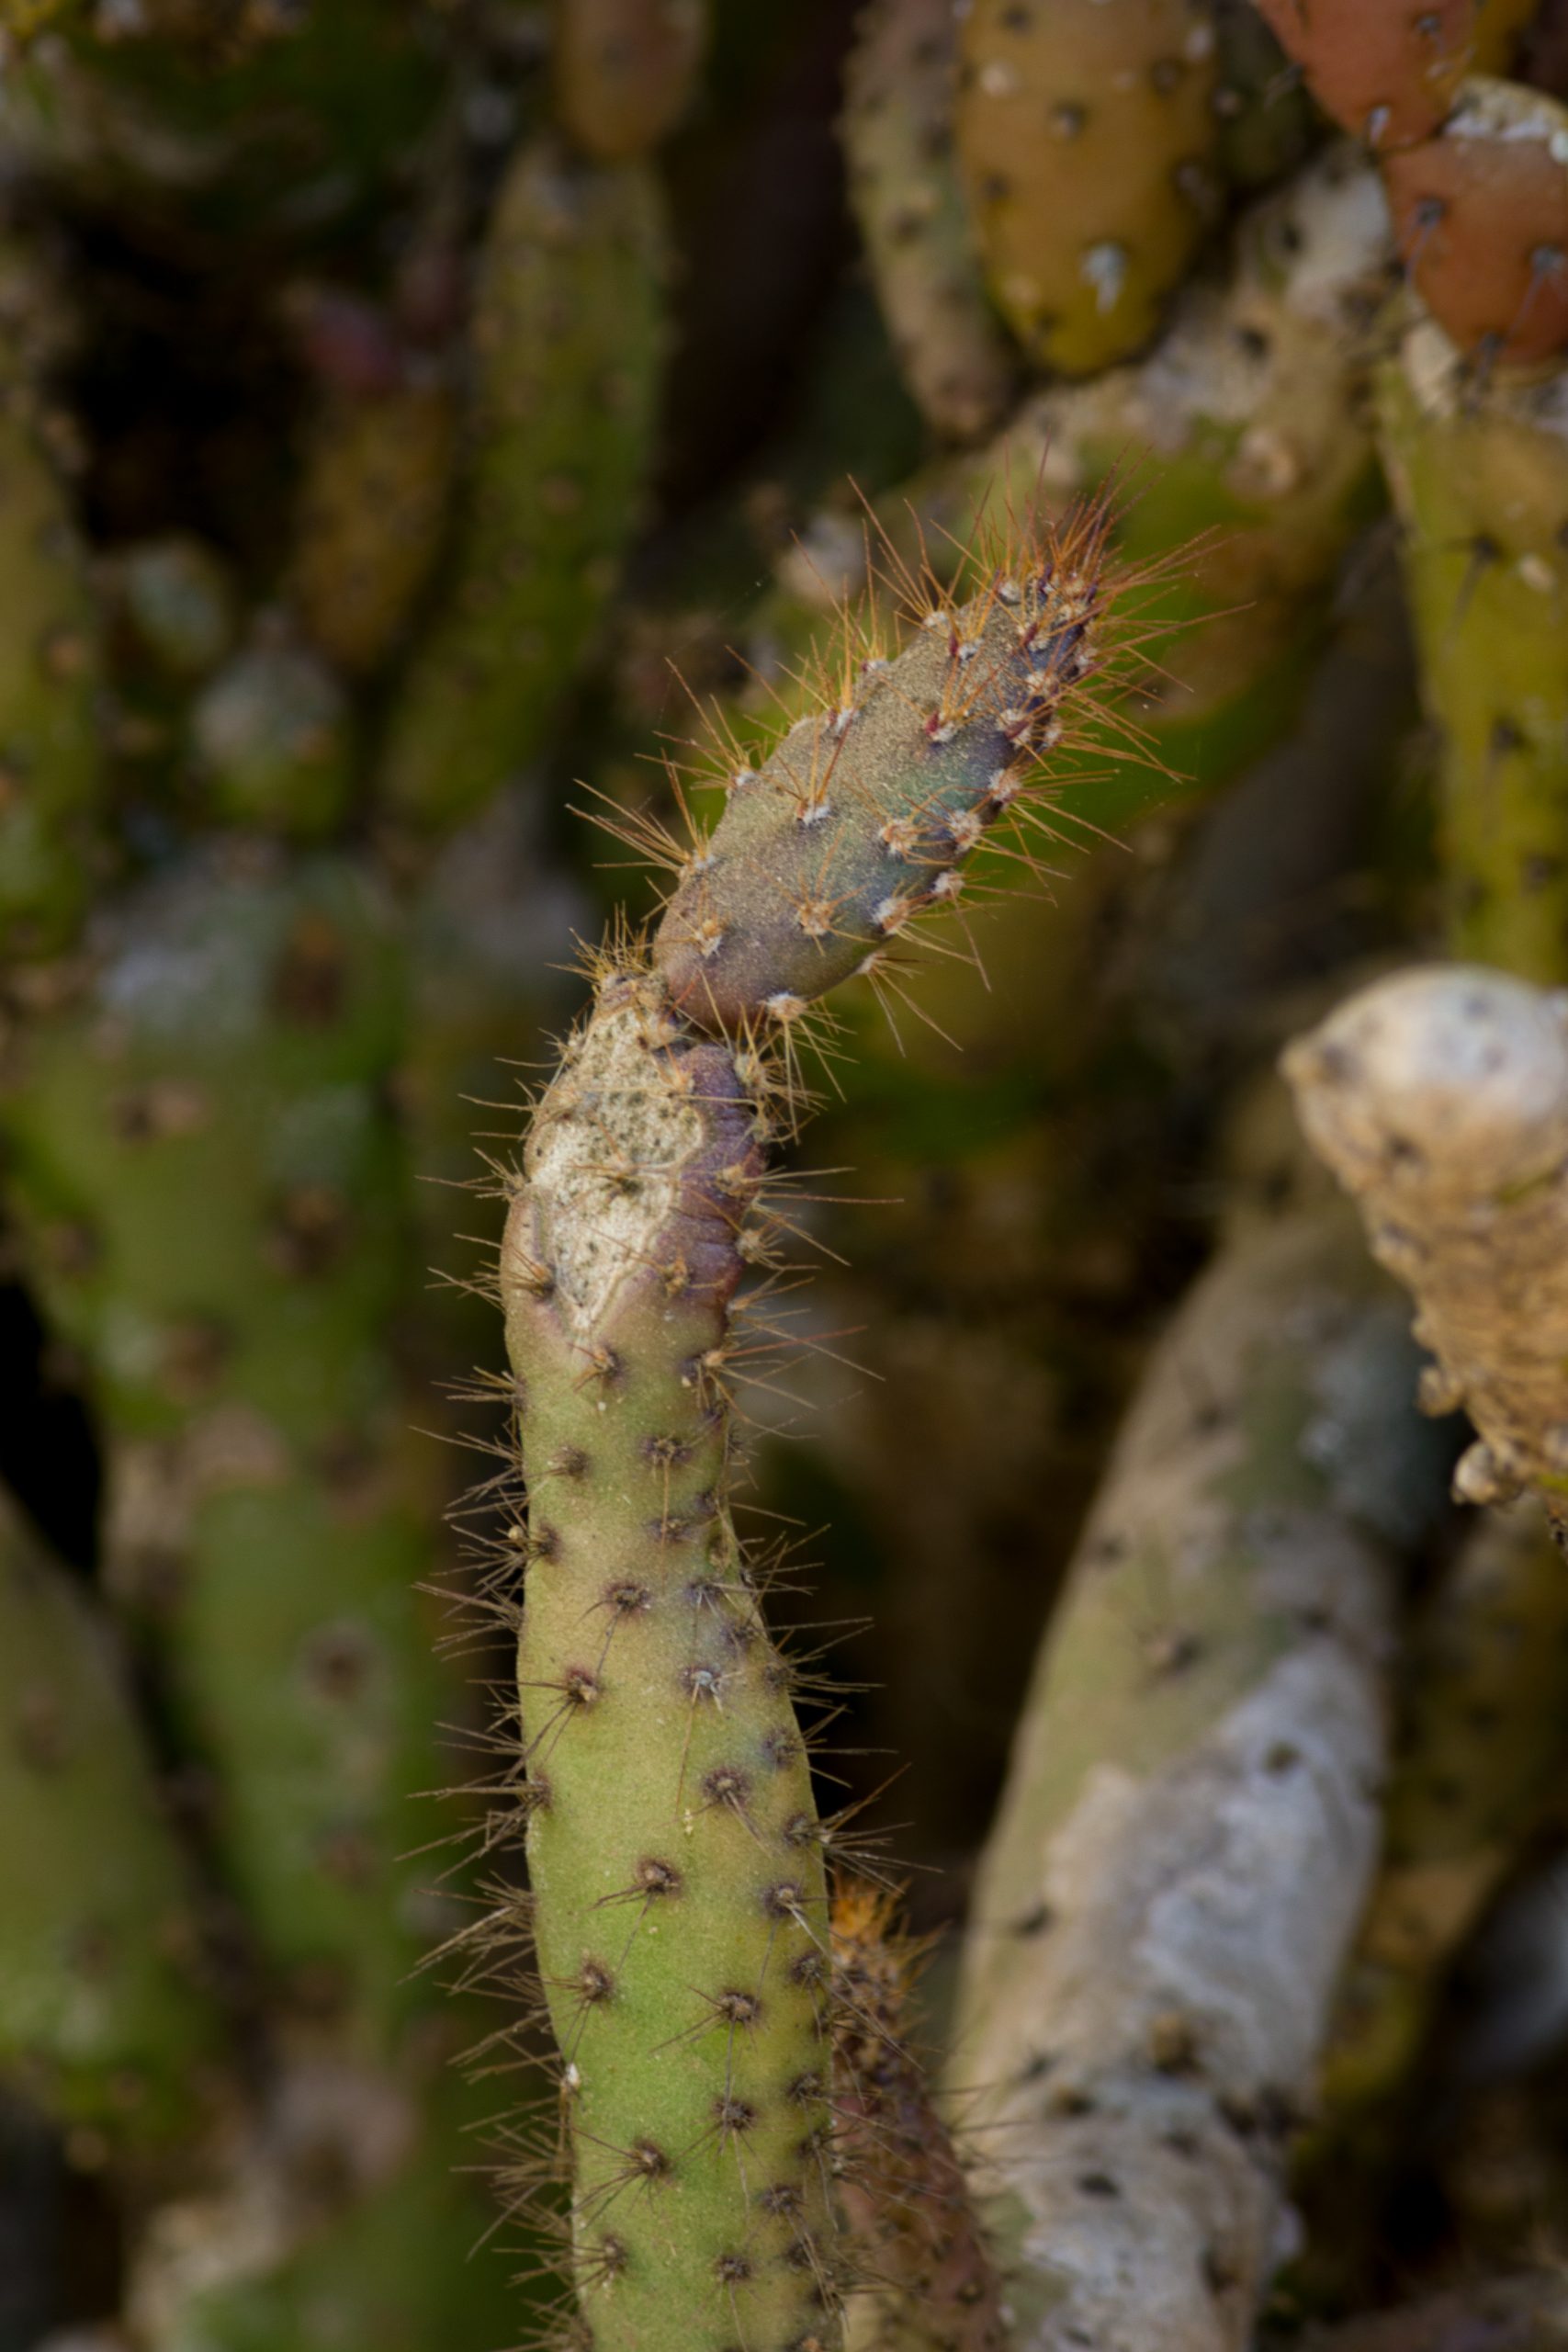 Thorns of cactus plant